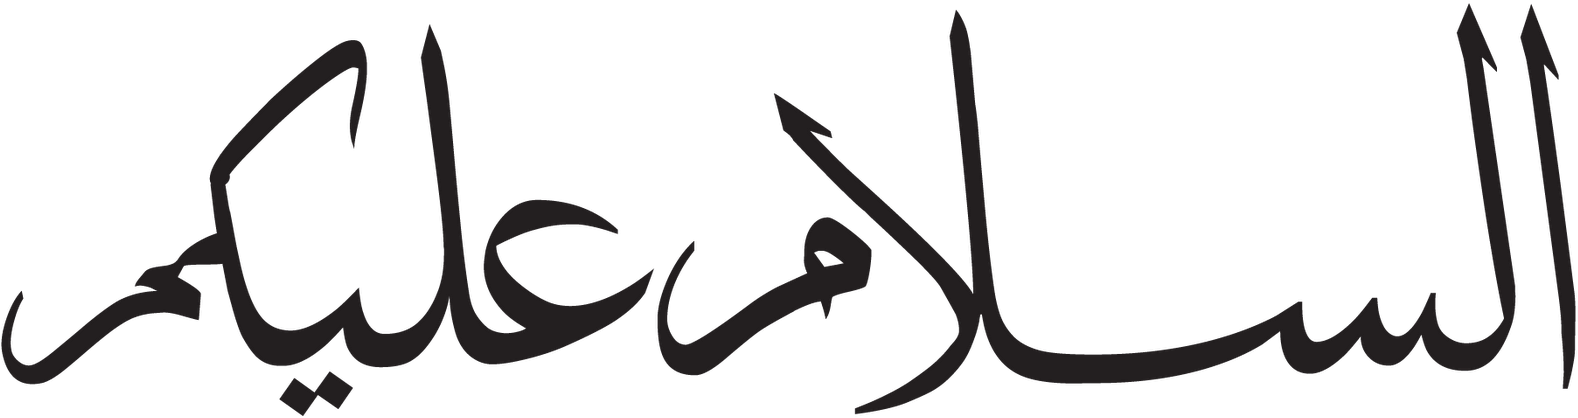 Ас саляму алейкум на арабском. Арабские надписи. Арабская надпись на белом фоне. Арабские символы. Красивые надписи на арабском.